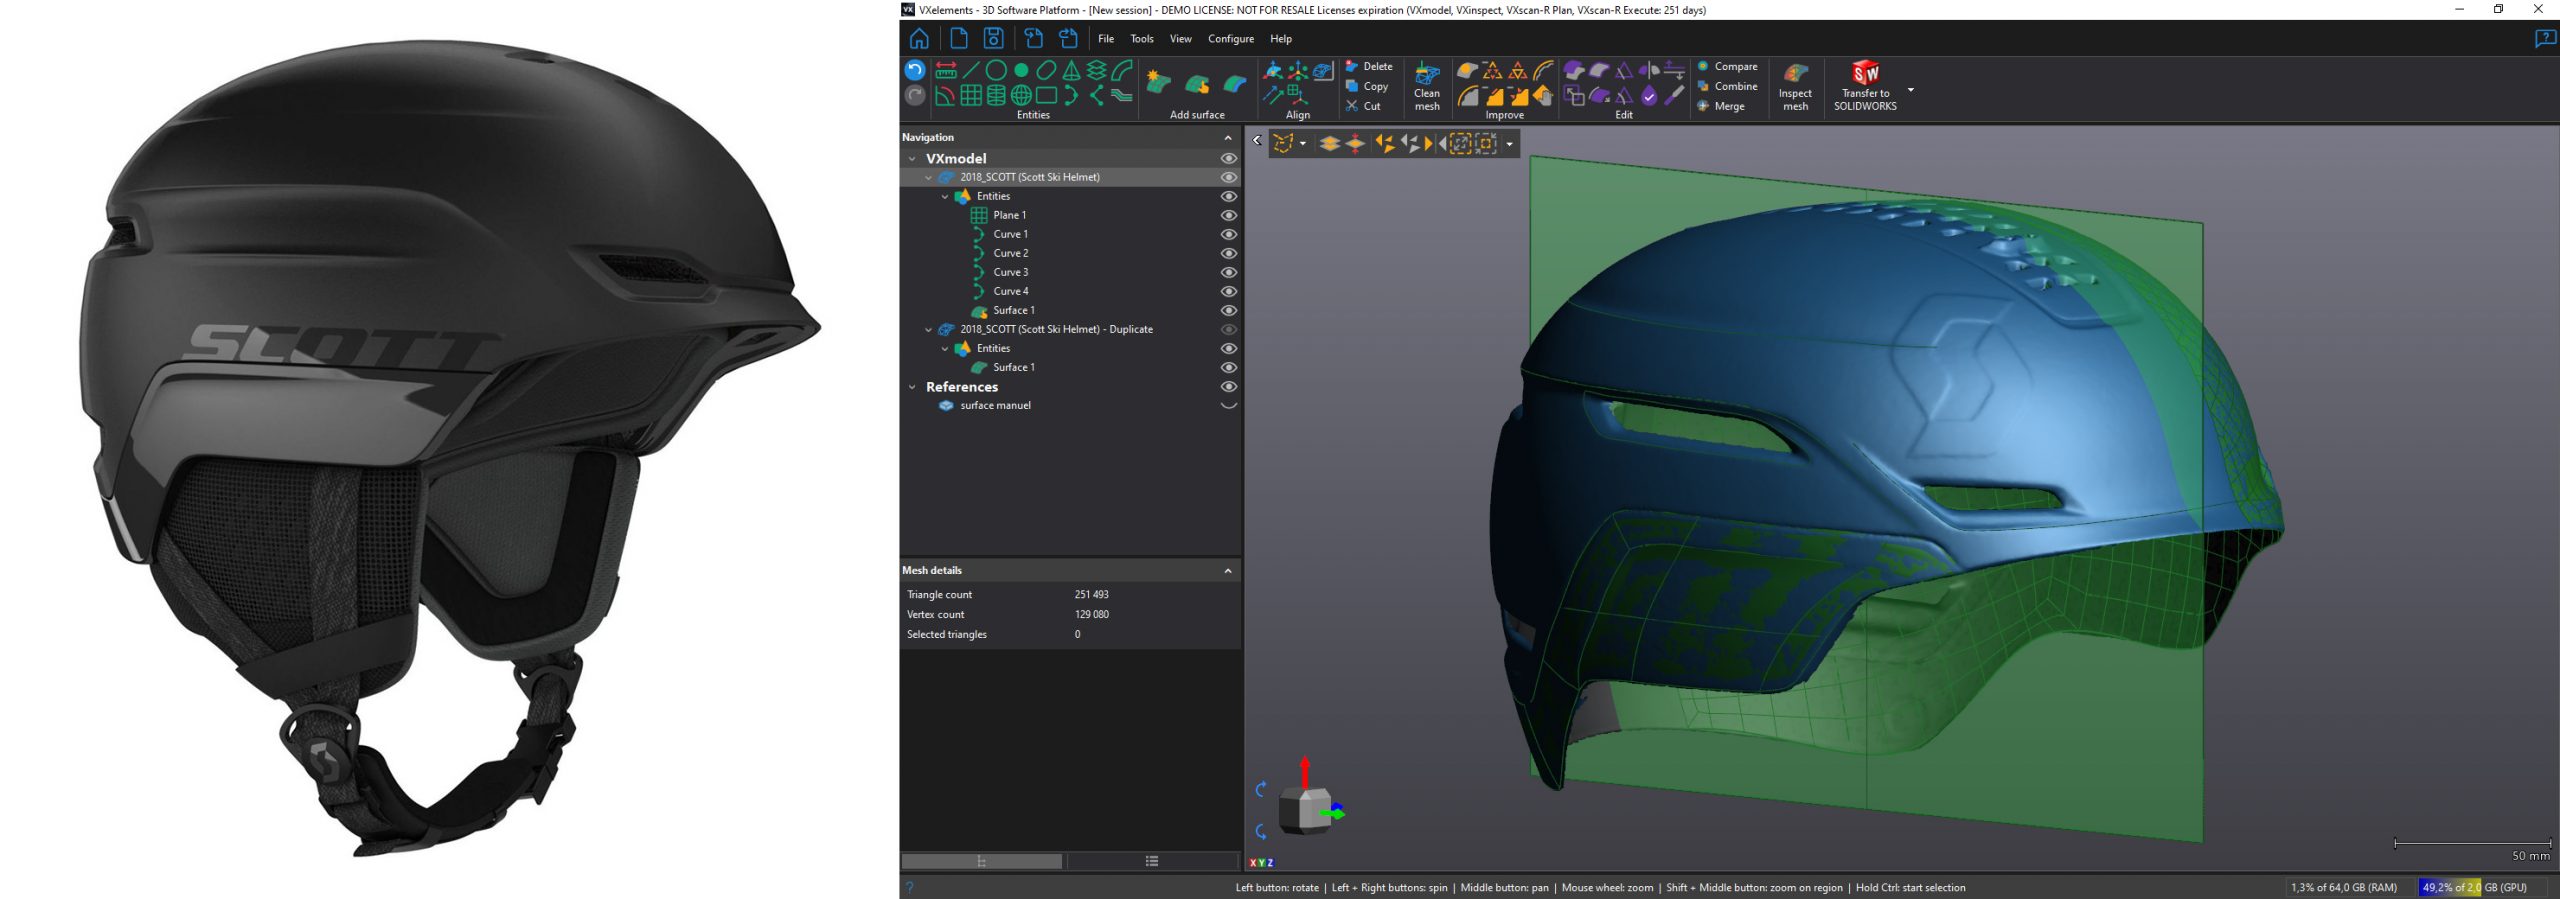 比较滑雪头盔实物与 VXelements 软件中的 3D 头盔模型